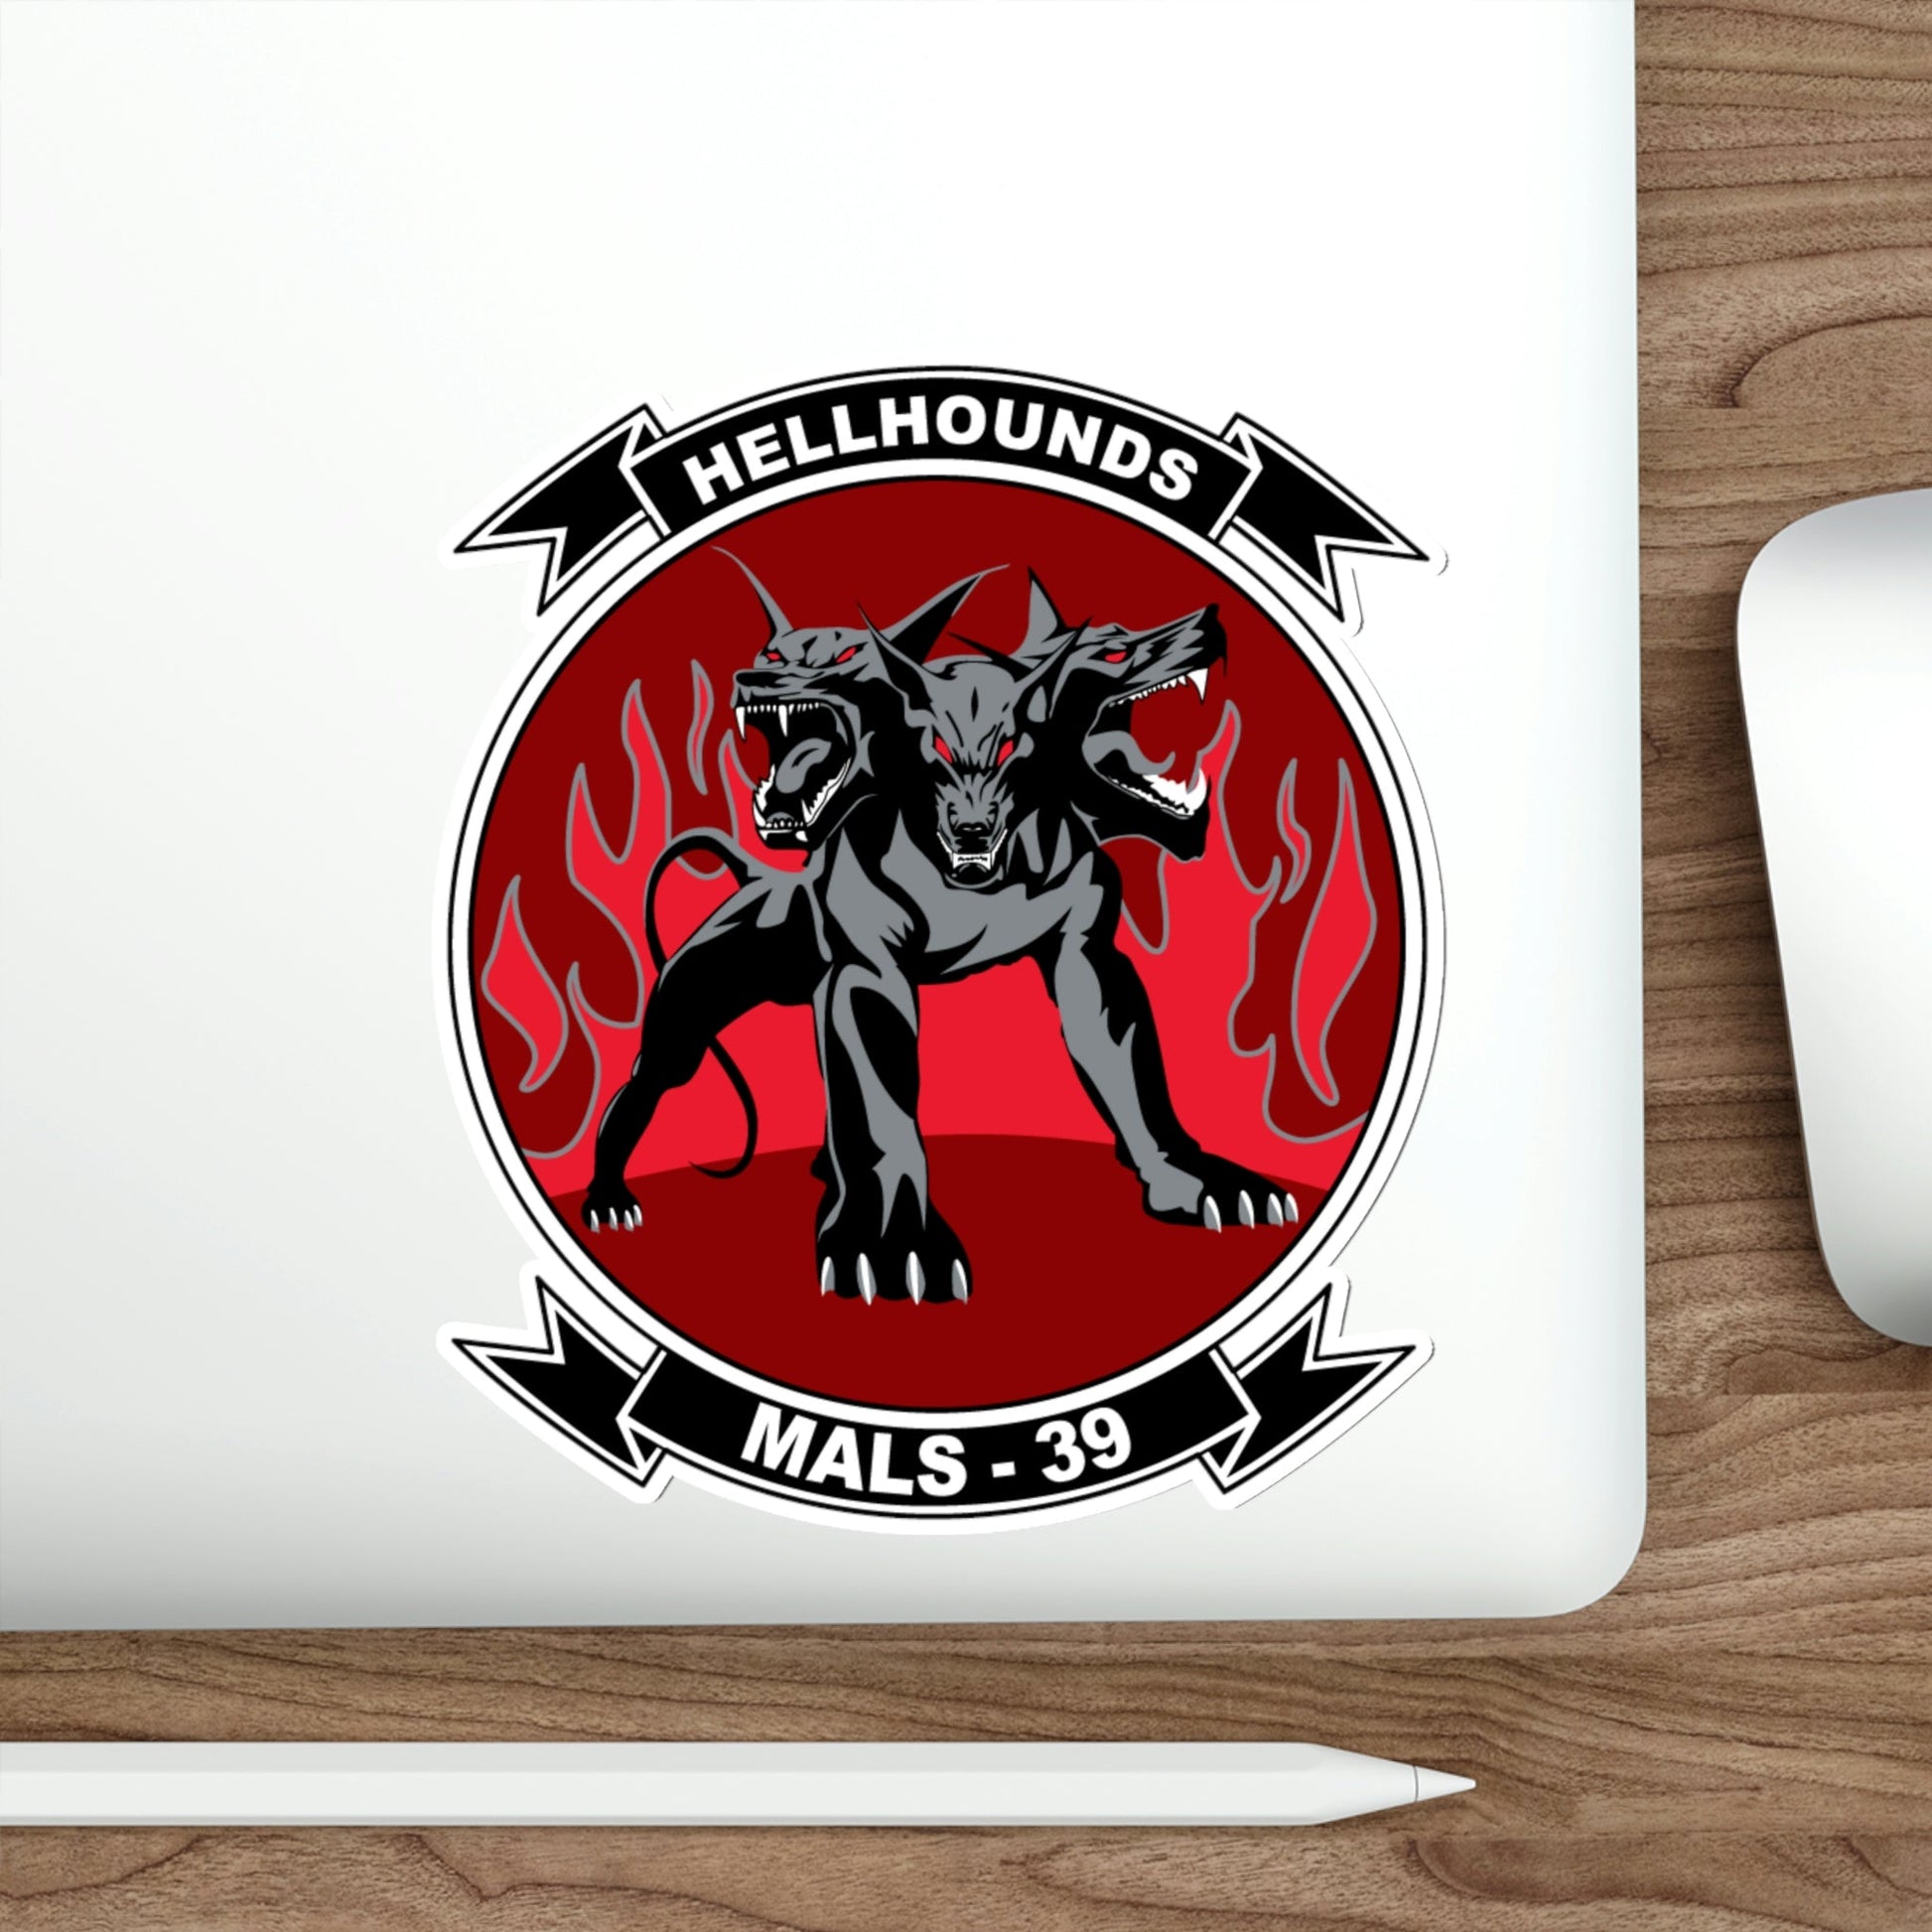 MALS 39 Hellhounds (USMC) STICKER Vinyl Die-Cut Decal-The Sticker Space